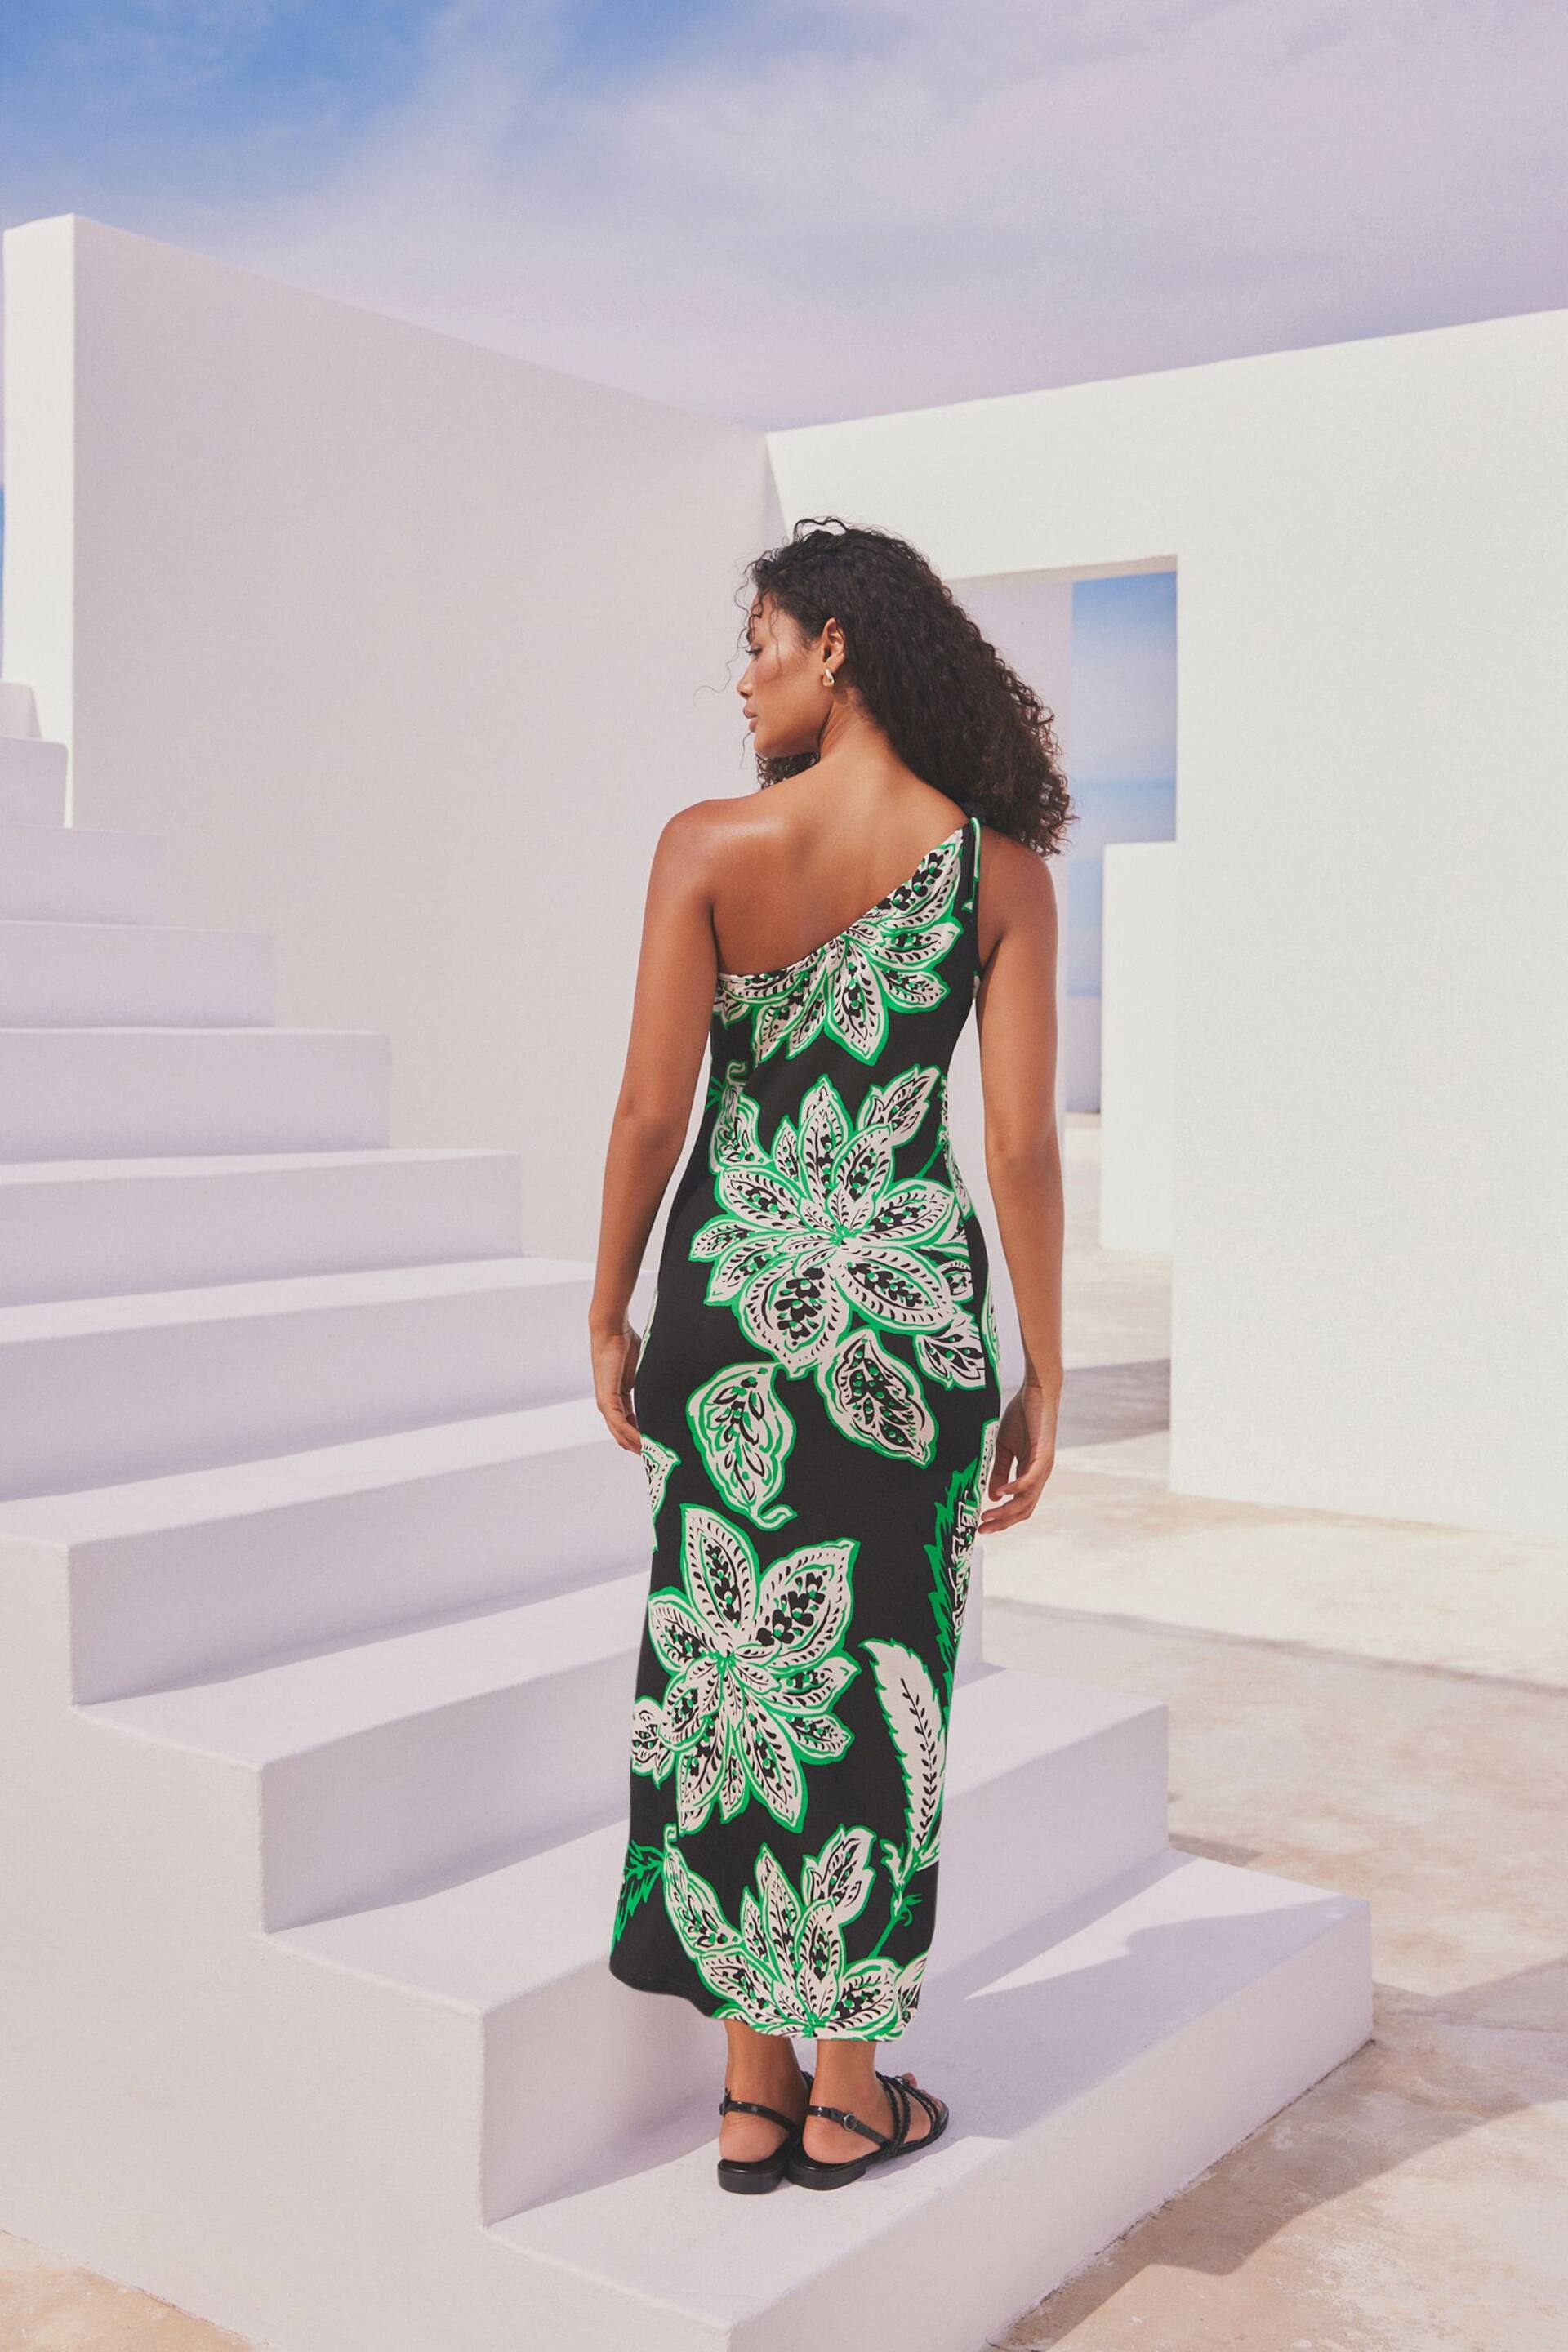 Black/Green Floral One Shoulder Twist Summer Dress - Image 3 of 8